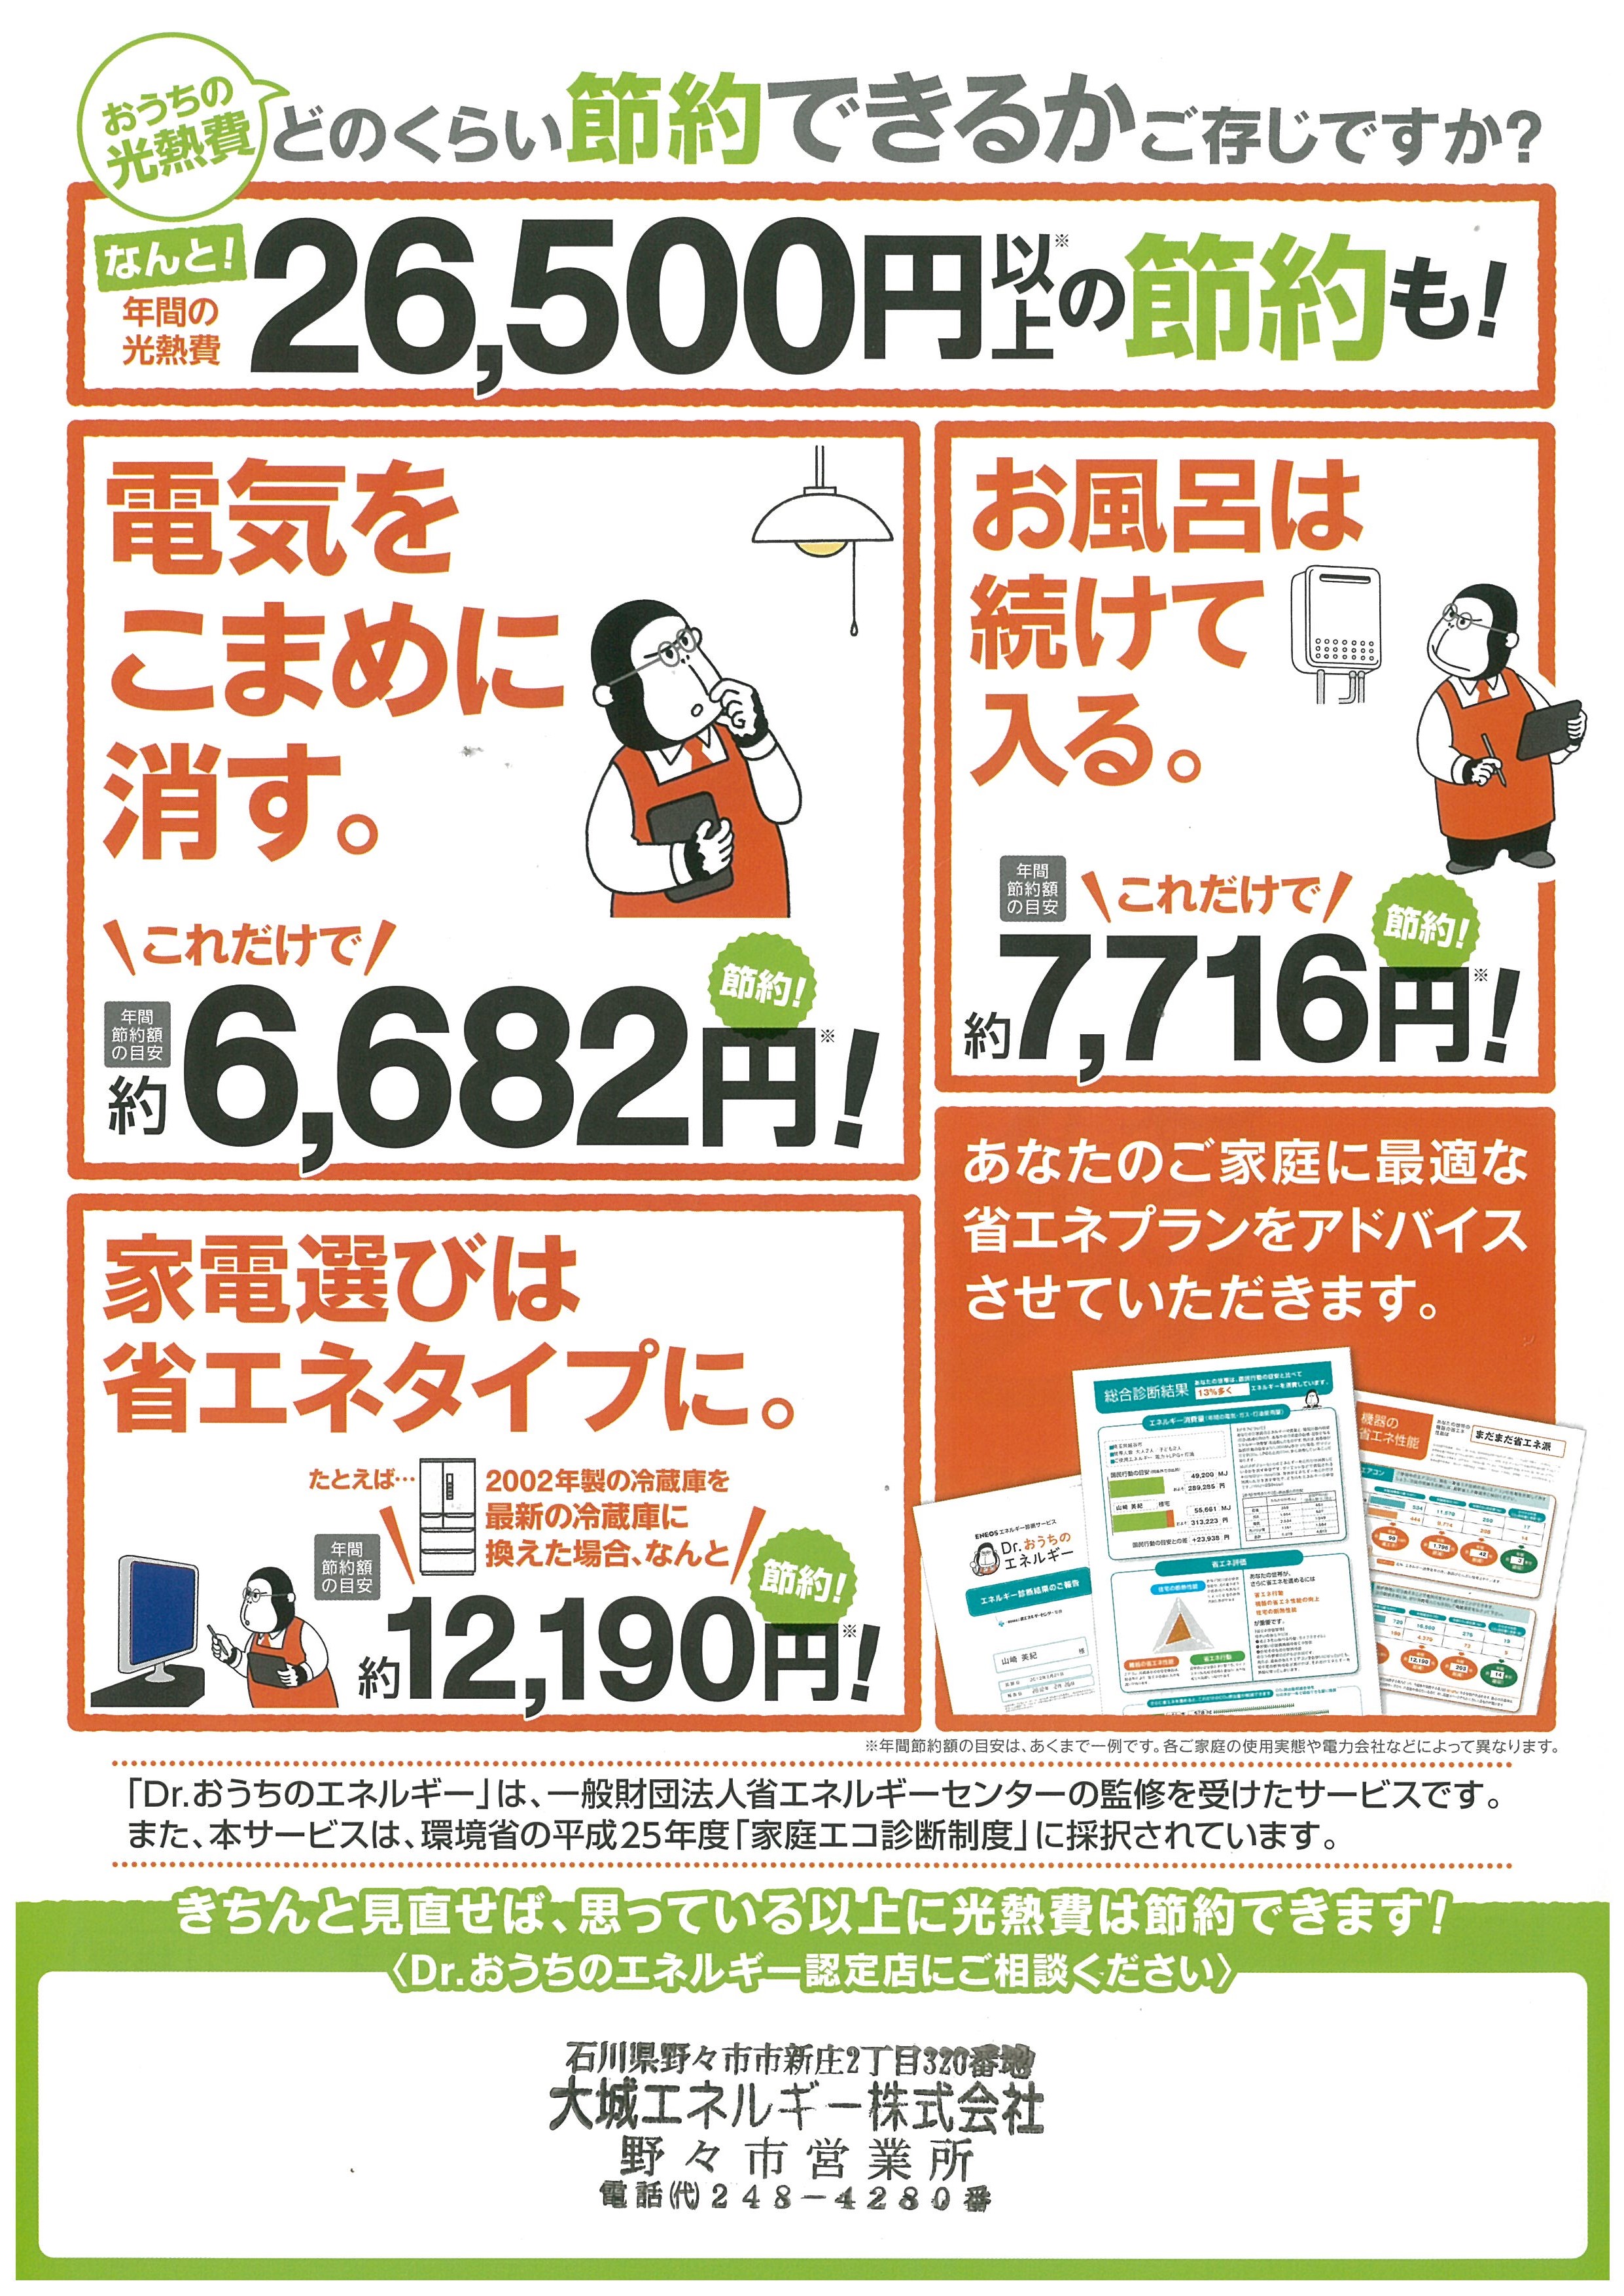 https://www.lixil-reformshop.jp/shop/SC00182004/2015/07/29/20150729143401-0001.jpg